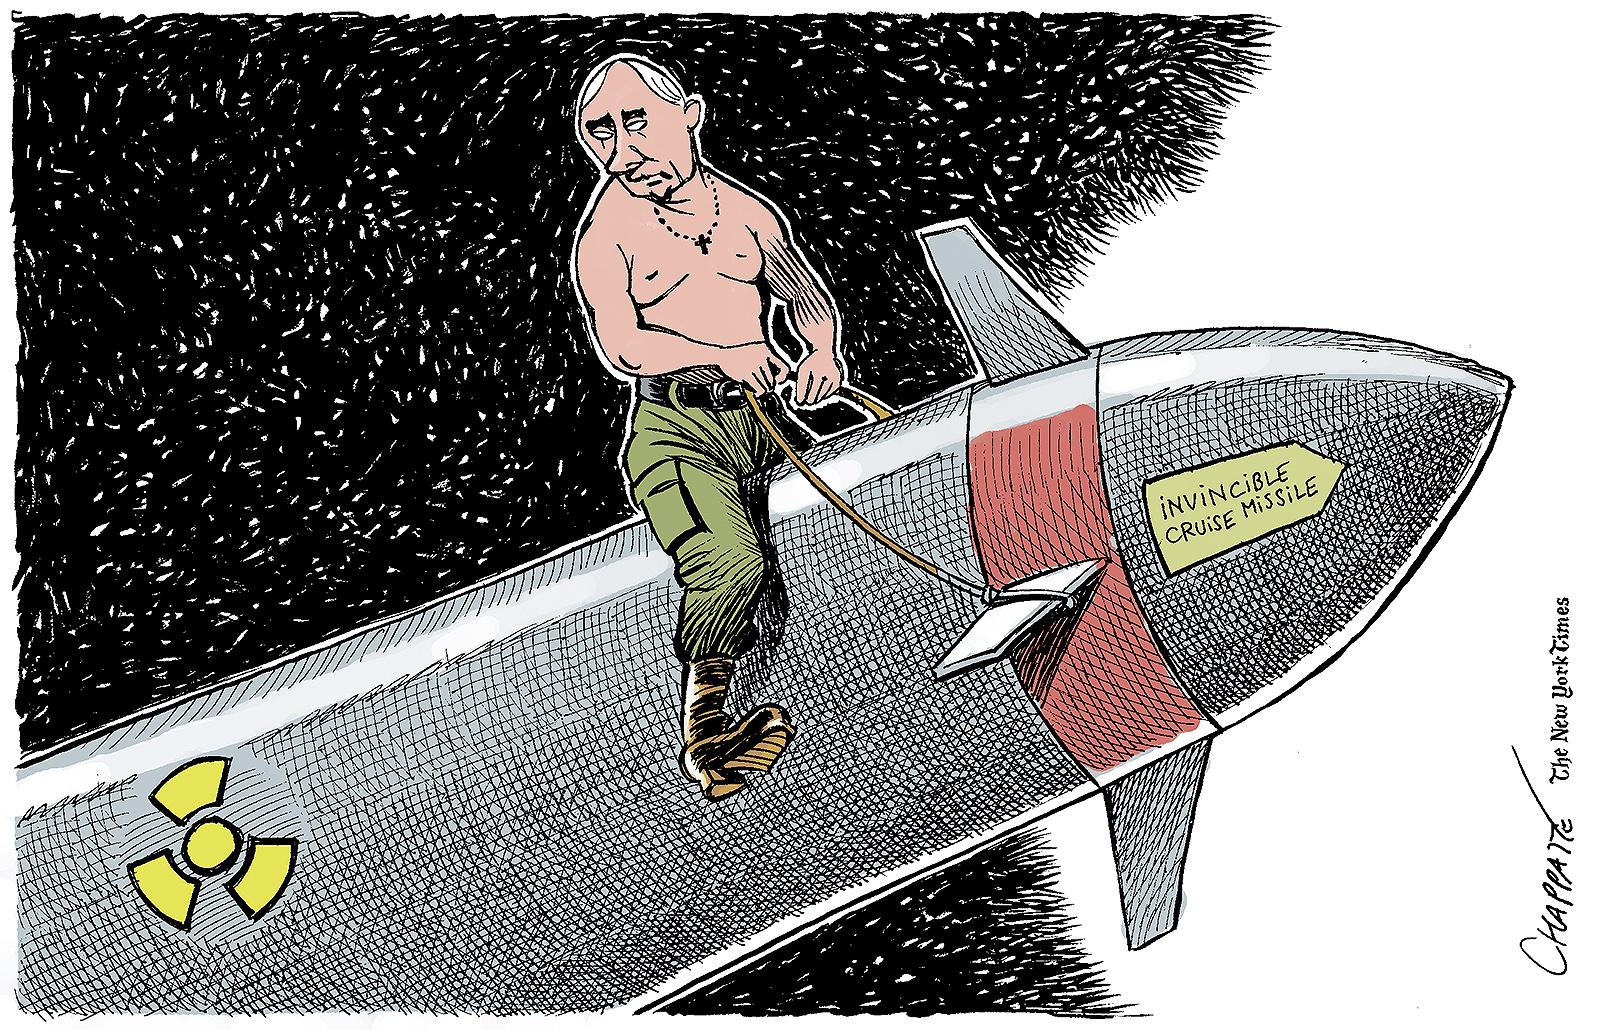 Les nouveaux missiles invincibles de Poutine